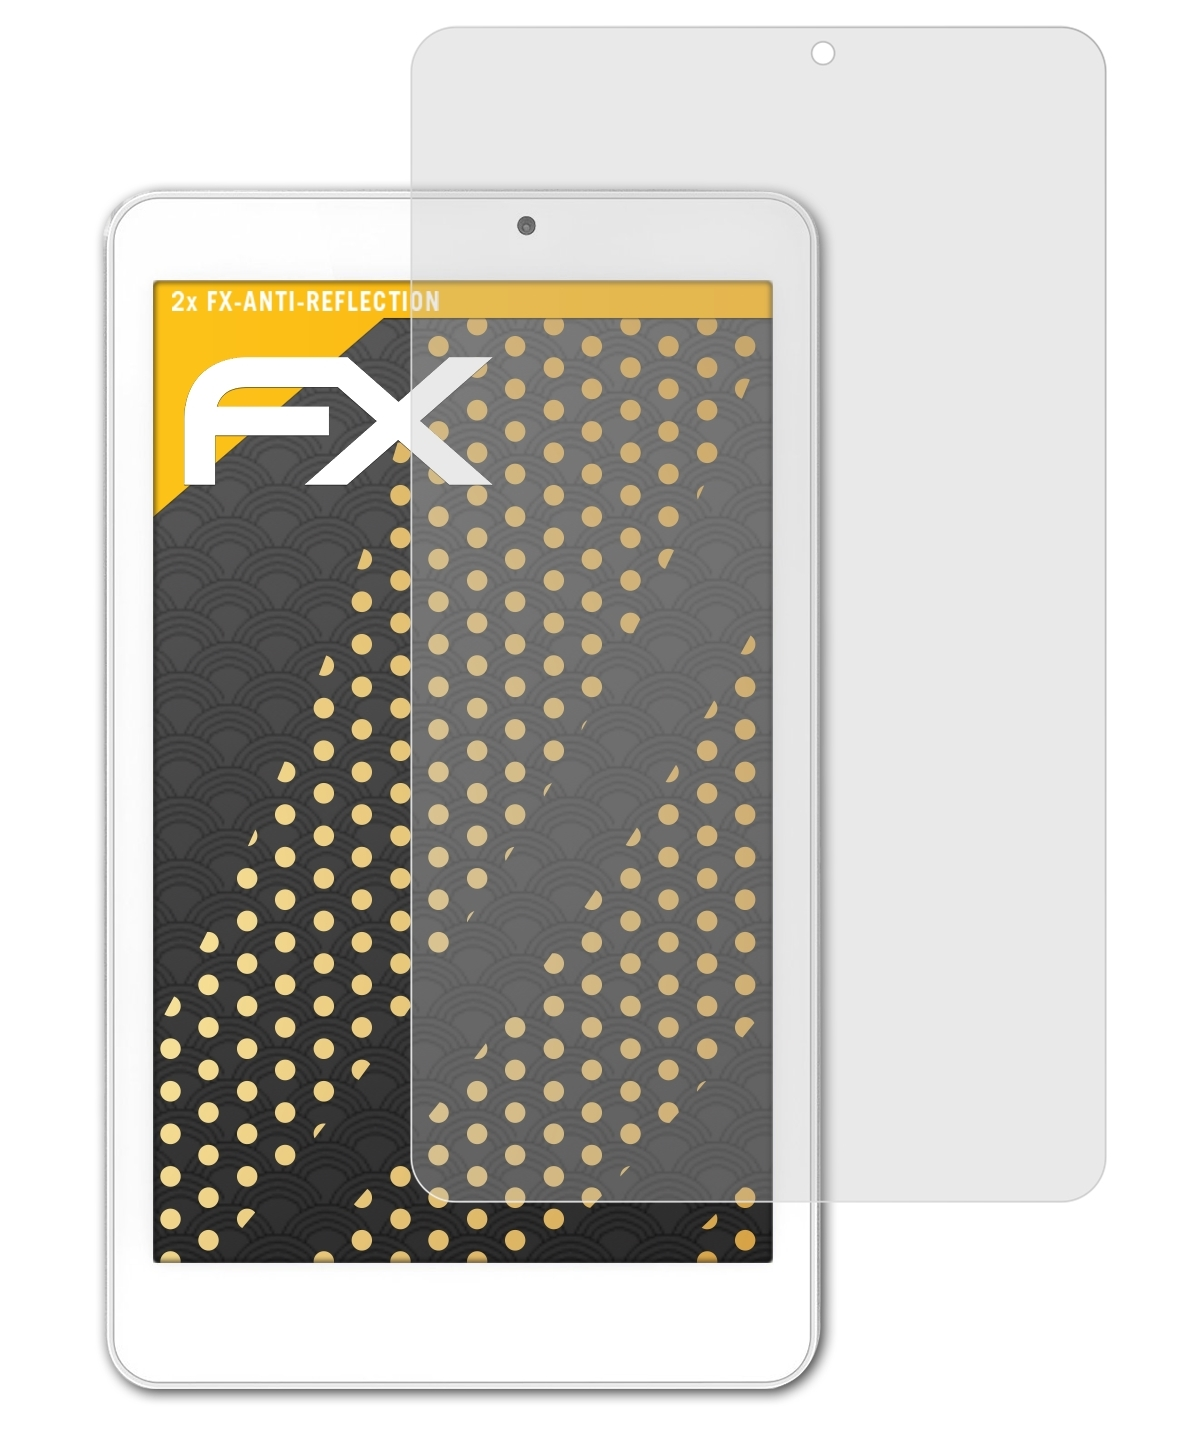 FX-Antireflex ATFOLIX W Iconia (W1-810)) Acer Displayschutz(für Tab 2x 8